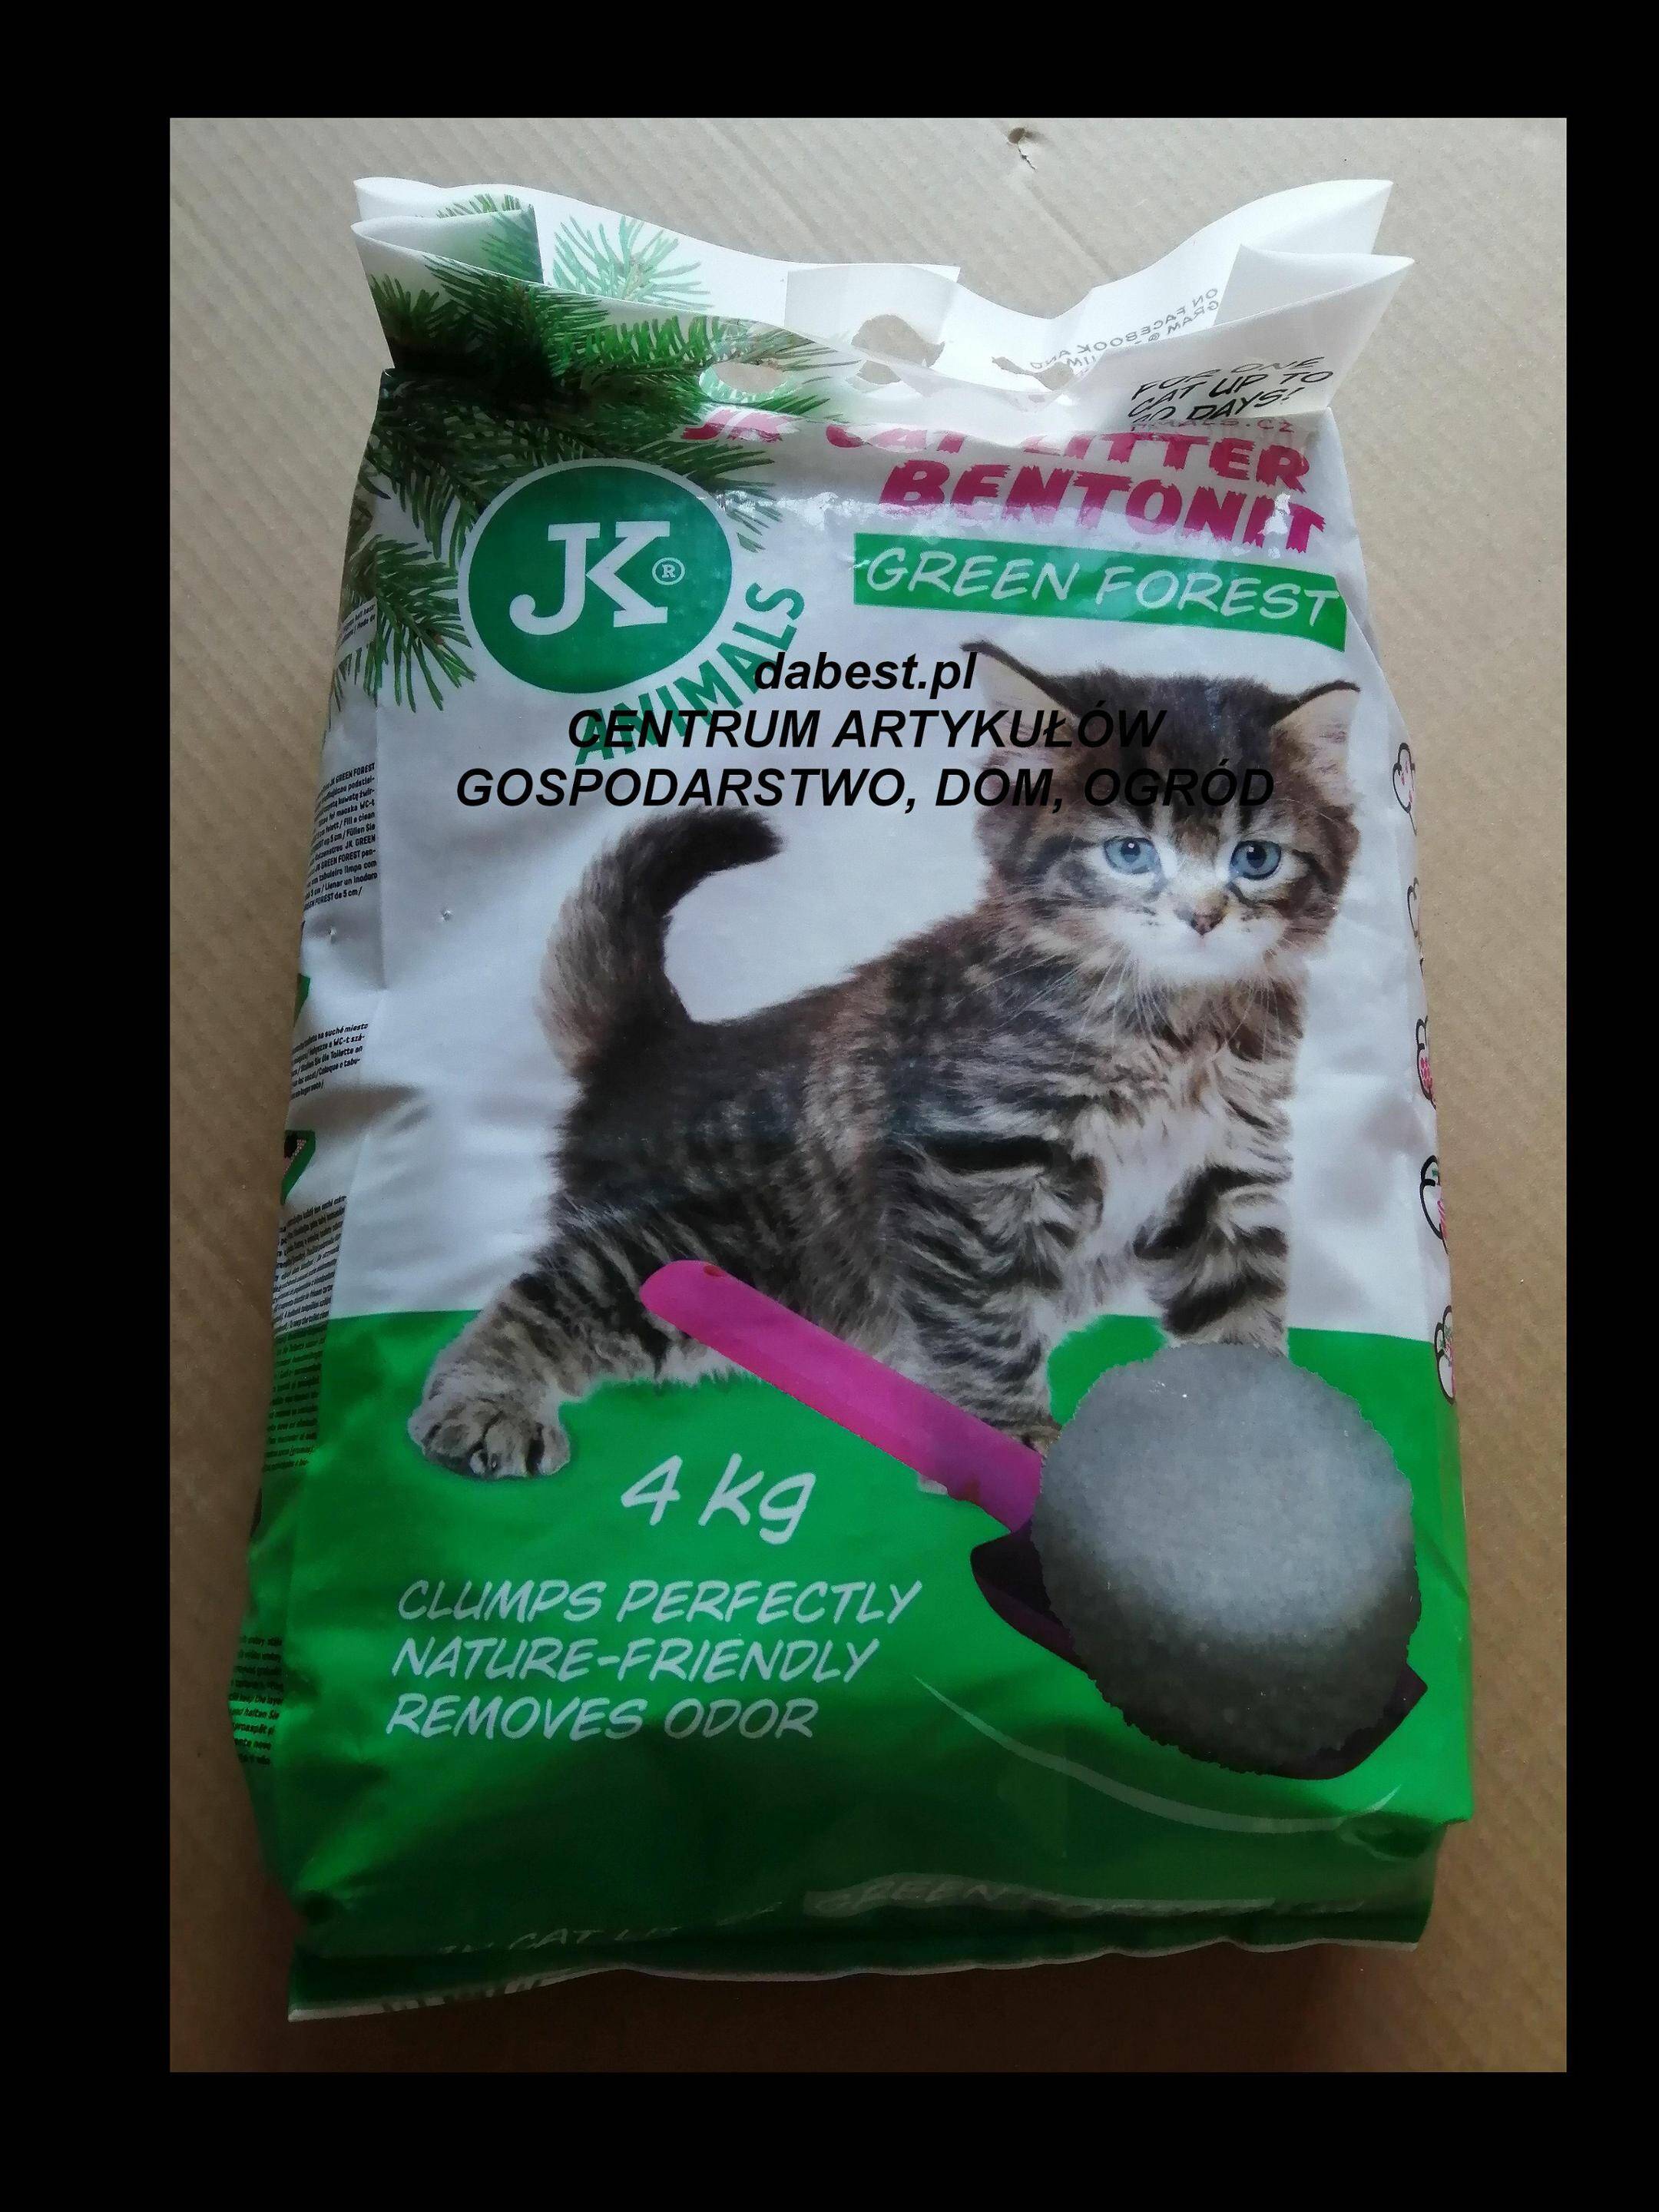 JK-Cat litter zielony las 4kg żwirek/kot (Zdjęcie 1)